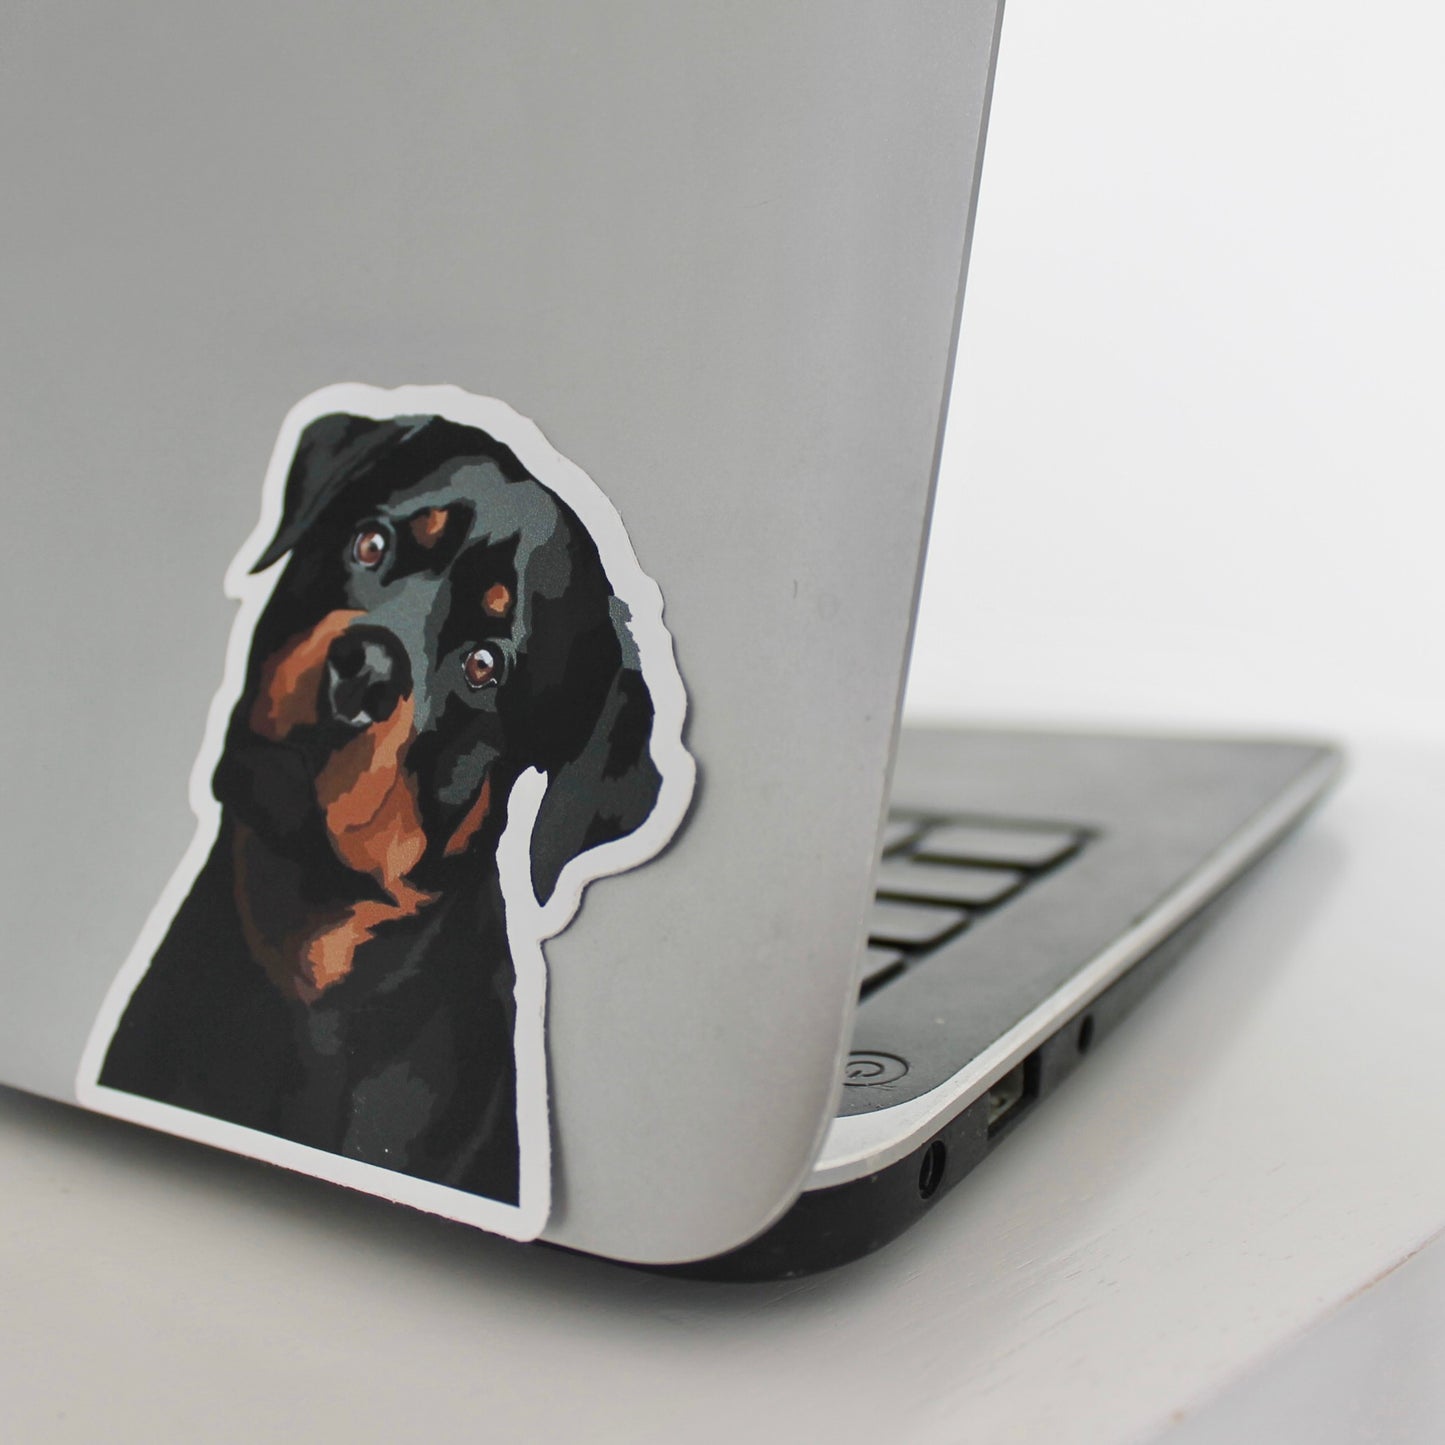 Rottweiler sticker on laptop